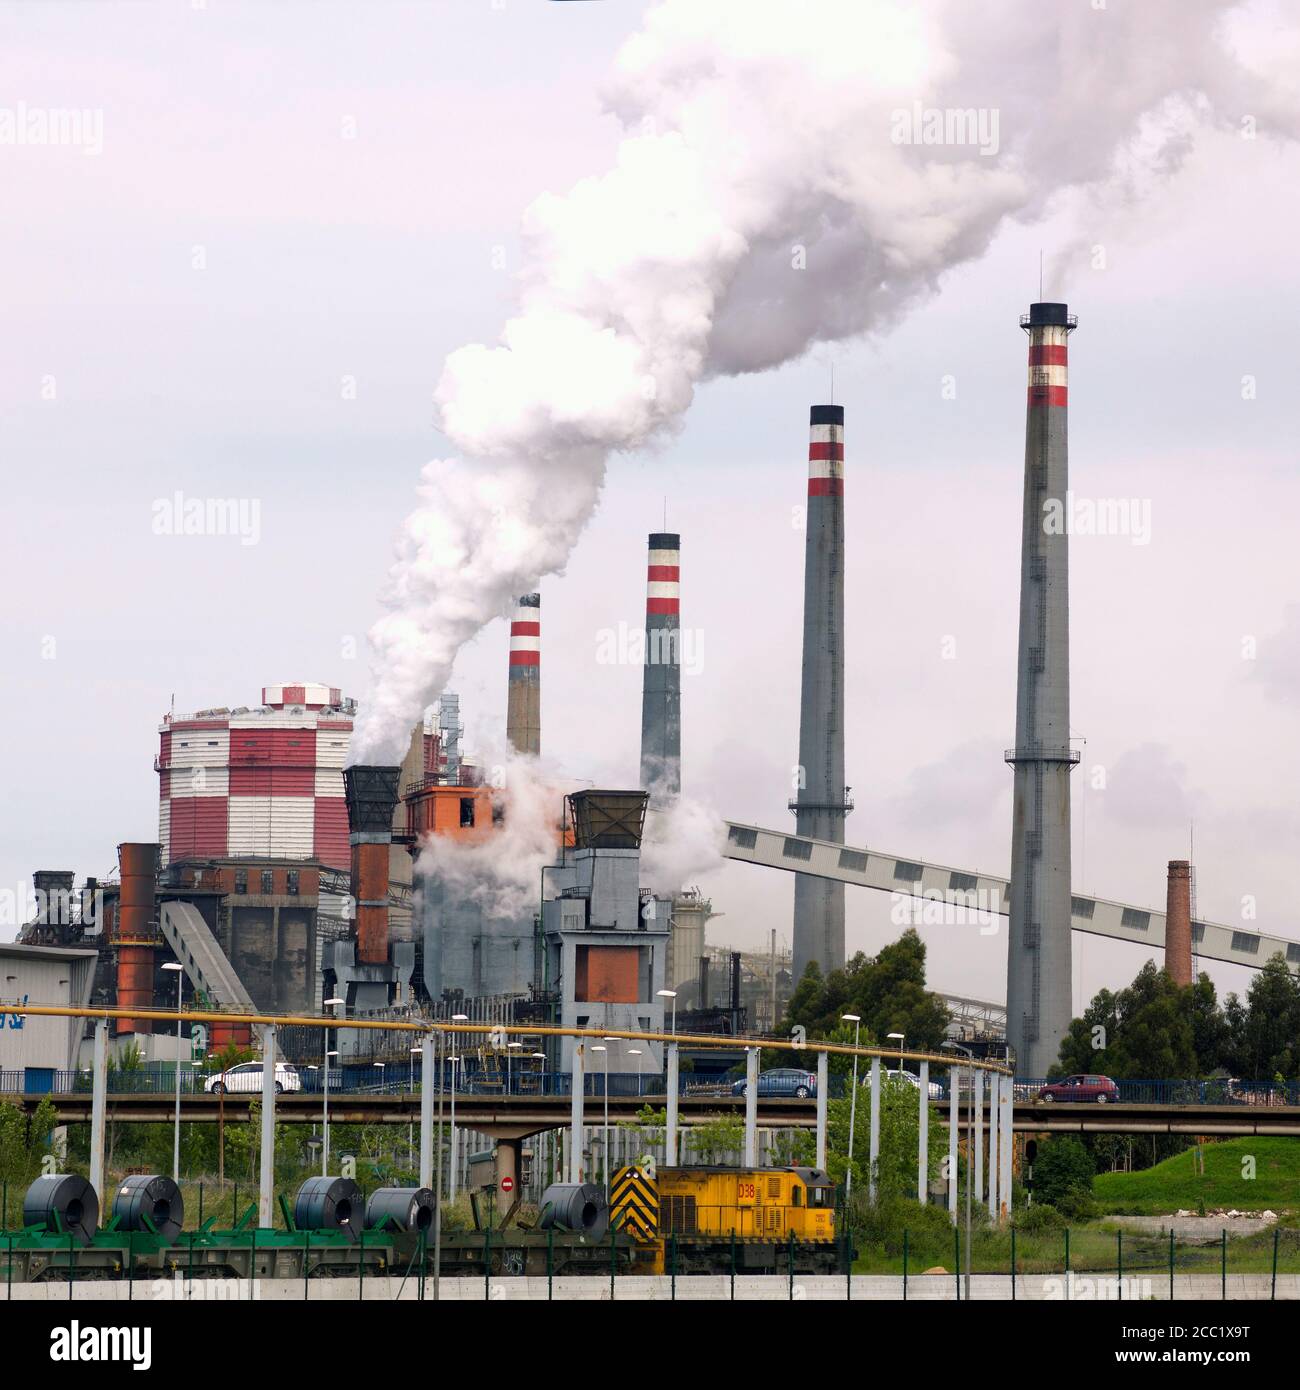 España, Avila, acerías con fumar chimeneas industriales Foto de stock